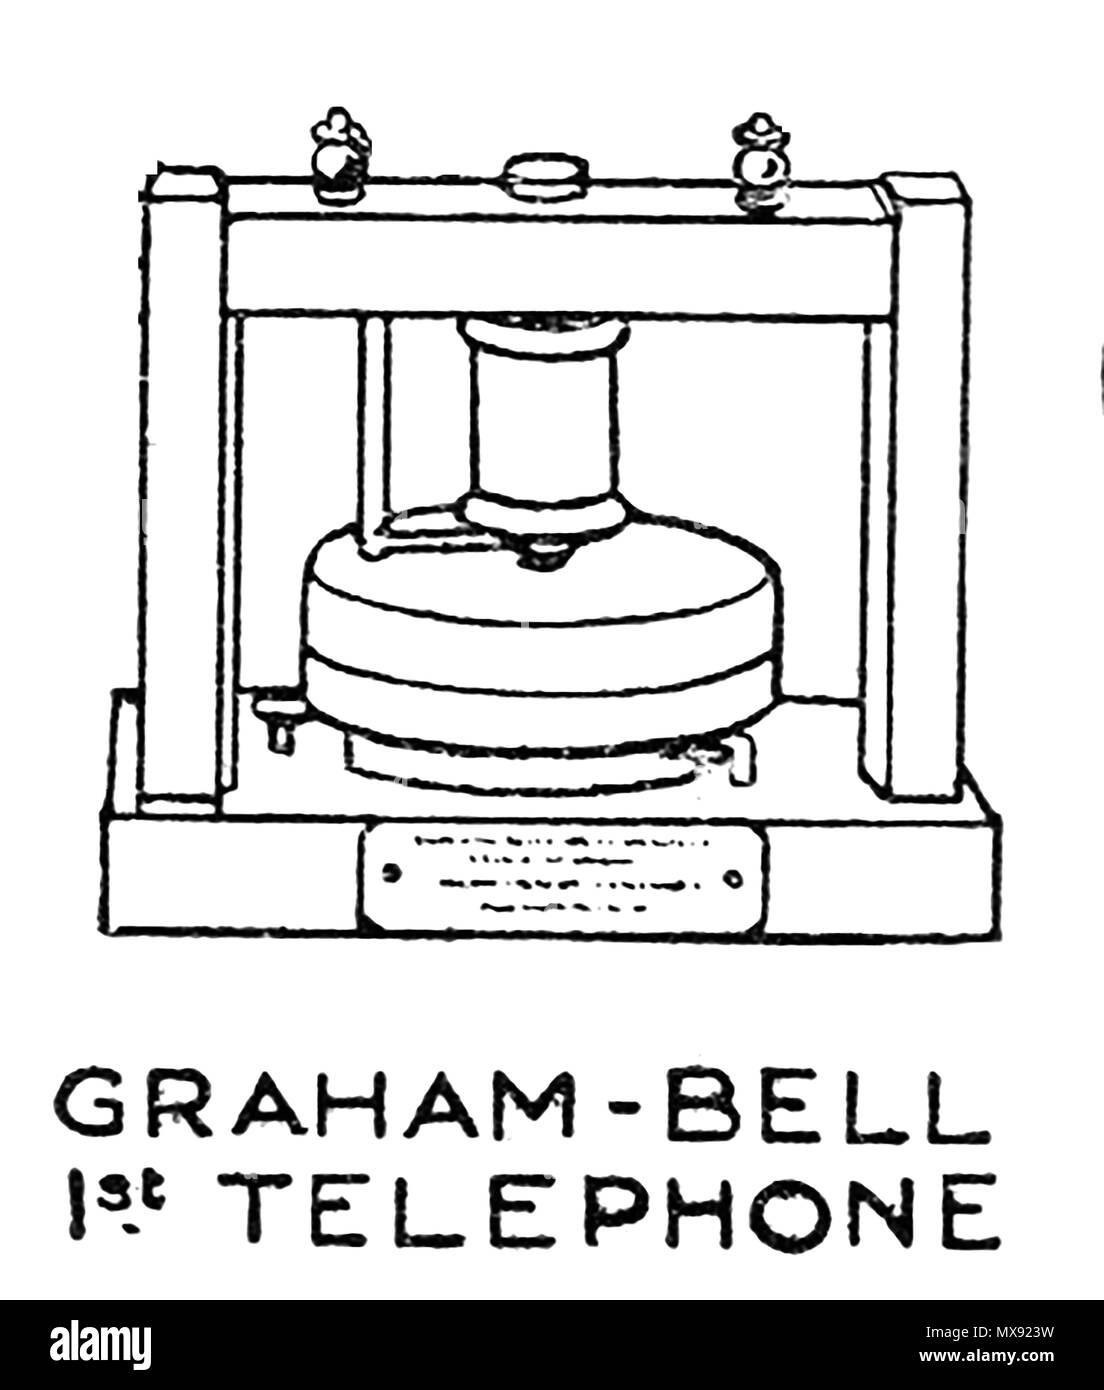 Début d'équipement téléphonique - une illustration de 1930 Graham Bell's premier appareil téléphonique Banque D'Images